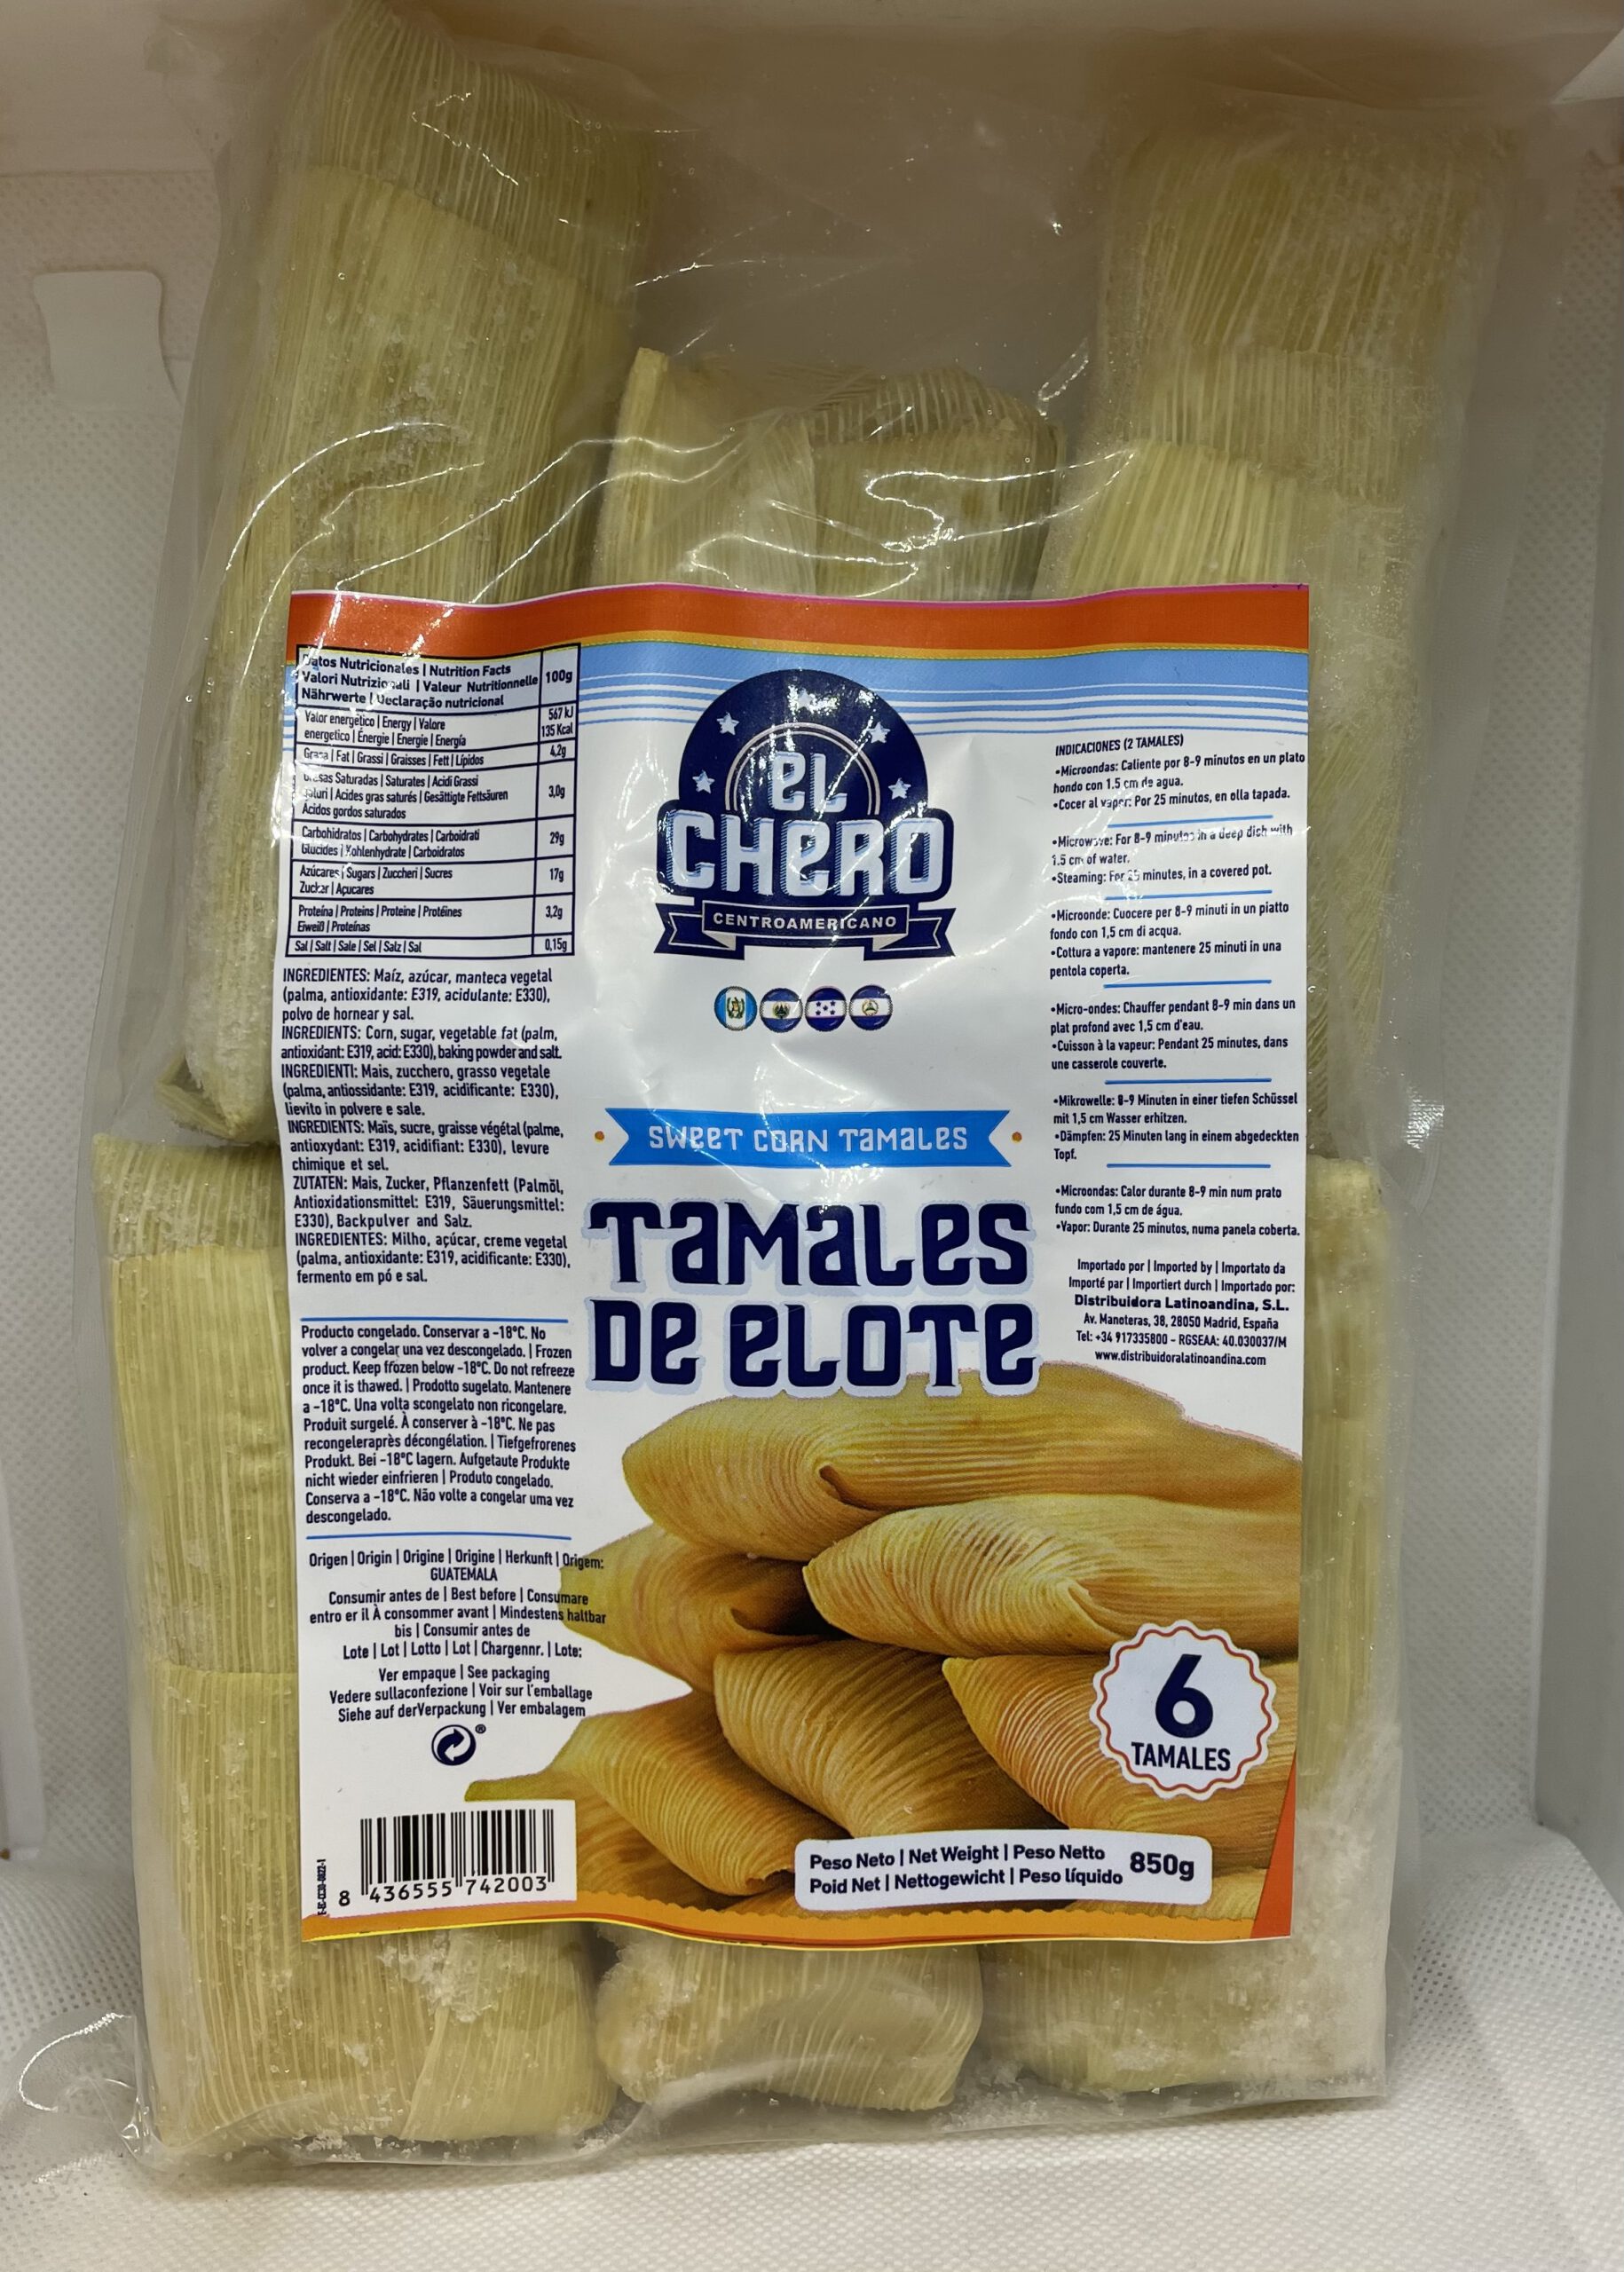 Tamales de Elote El Chero 850g (TK-Ware)